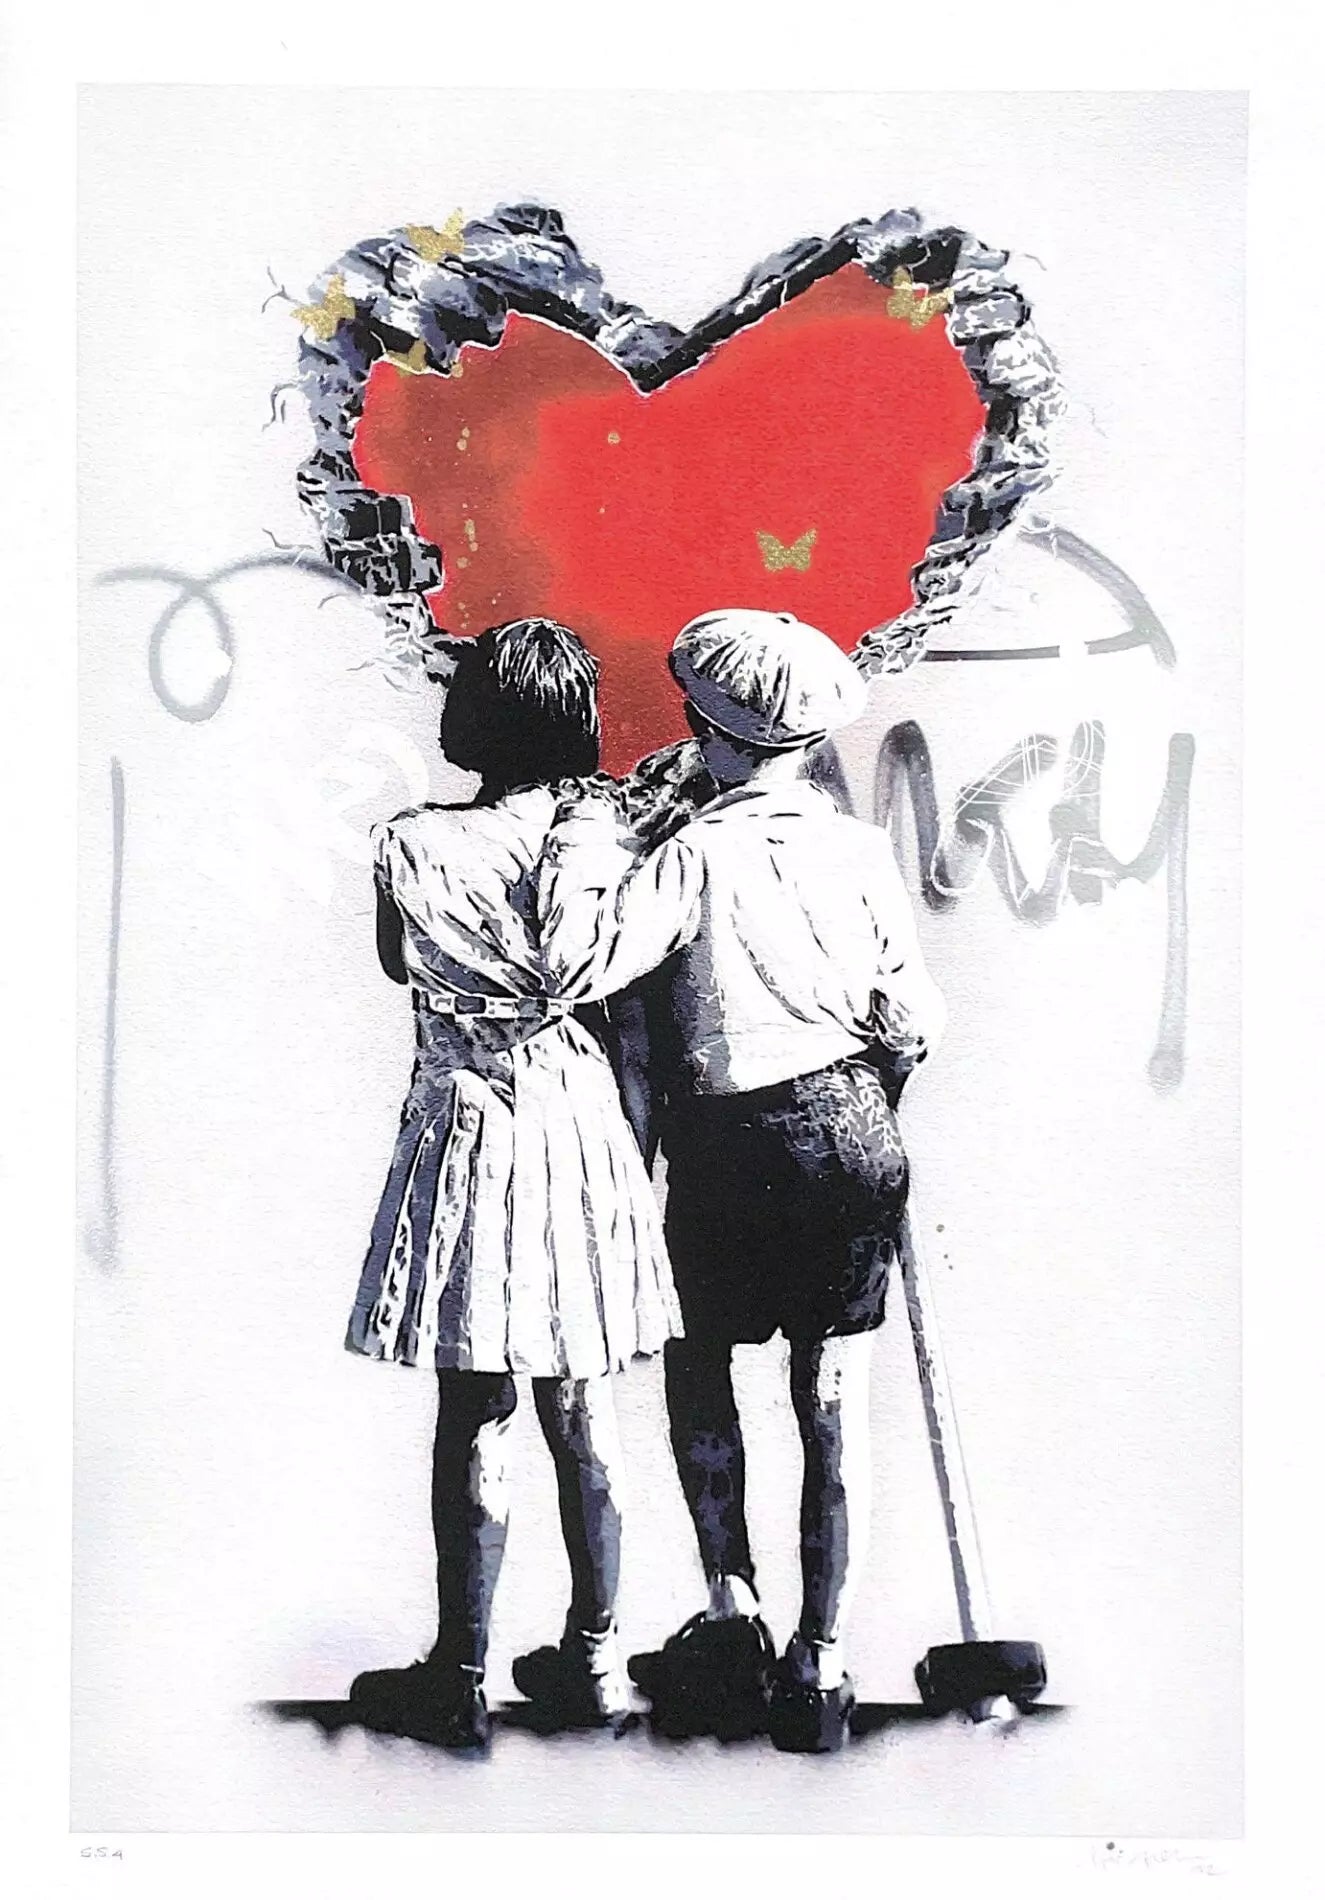 True Love Special di Alessio-B. Stampa giclée stampa giclée su carta 320 gsm edizione limitata rappresentante due bambini che, abbracciati, osservano un grande cuore rosso | Cd Studio d'Arte